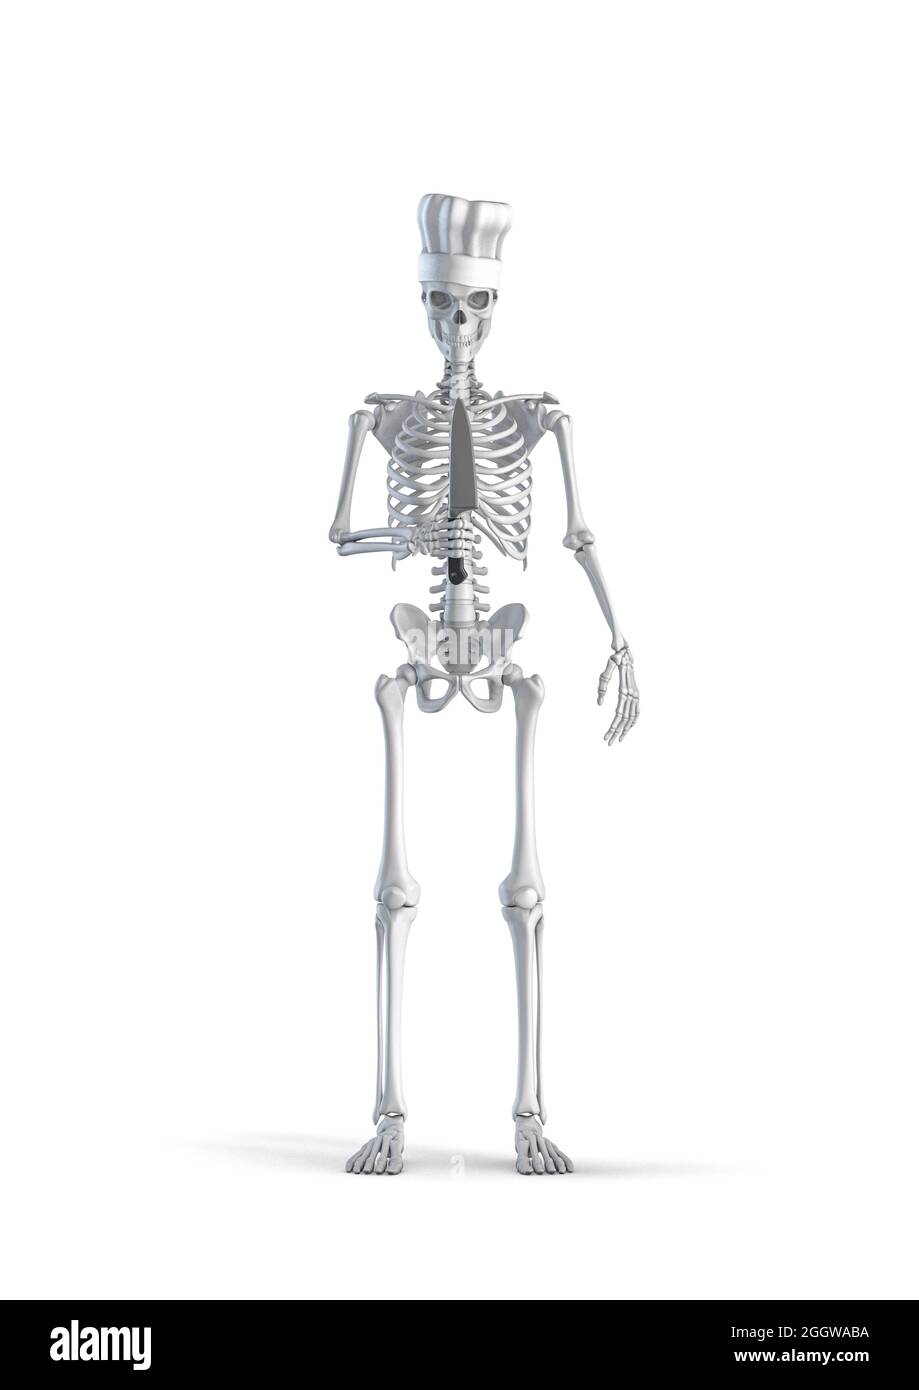 Esqueleto de chef de cocina - 3D ilustración de figura de esqueleto humano  macho con sombrero de chef y sosteniendo un cuchillo de cocina grande  aislado en el fondo blanco del estudio